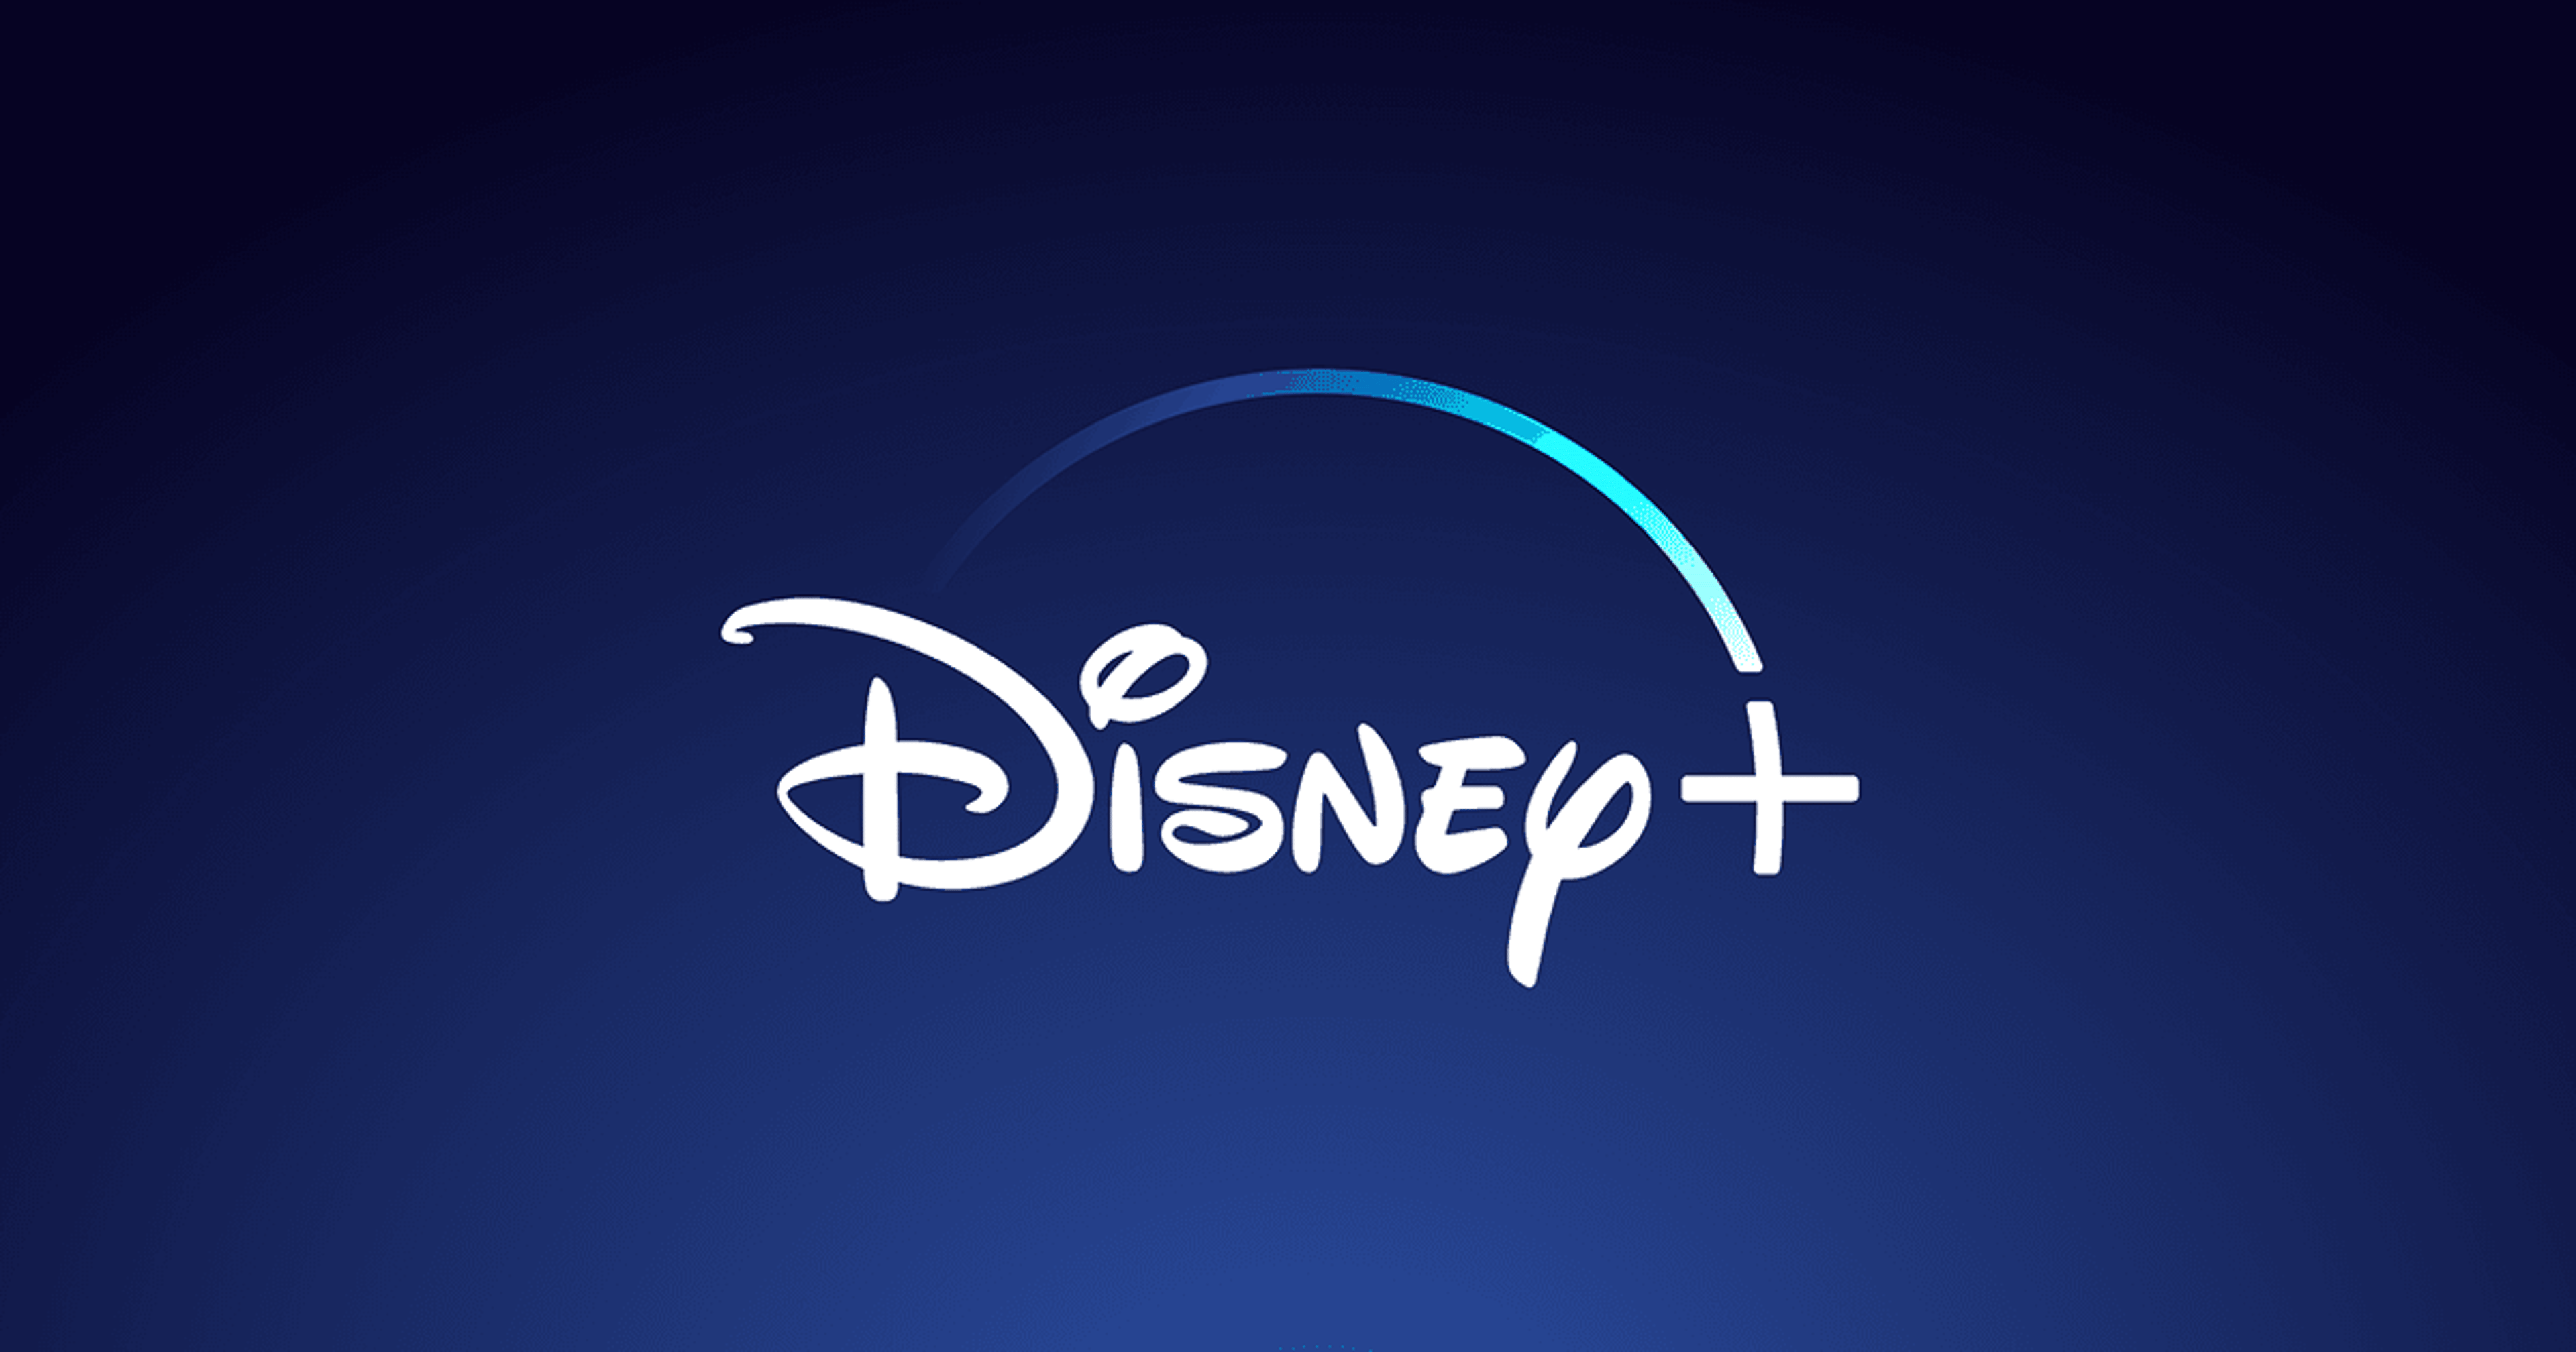 Disney + è sbarcato in Italia – Recensione della nuova piattaforma streaming Copertina